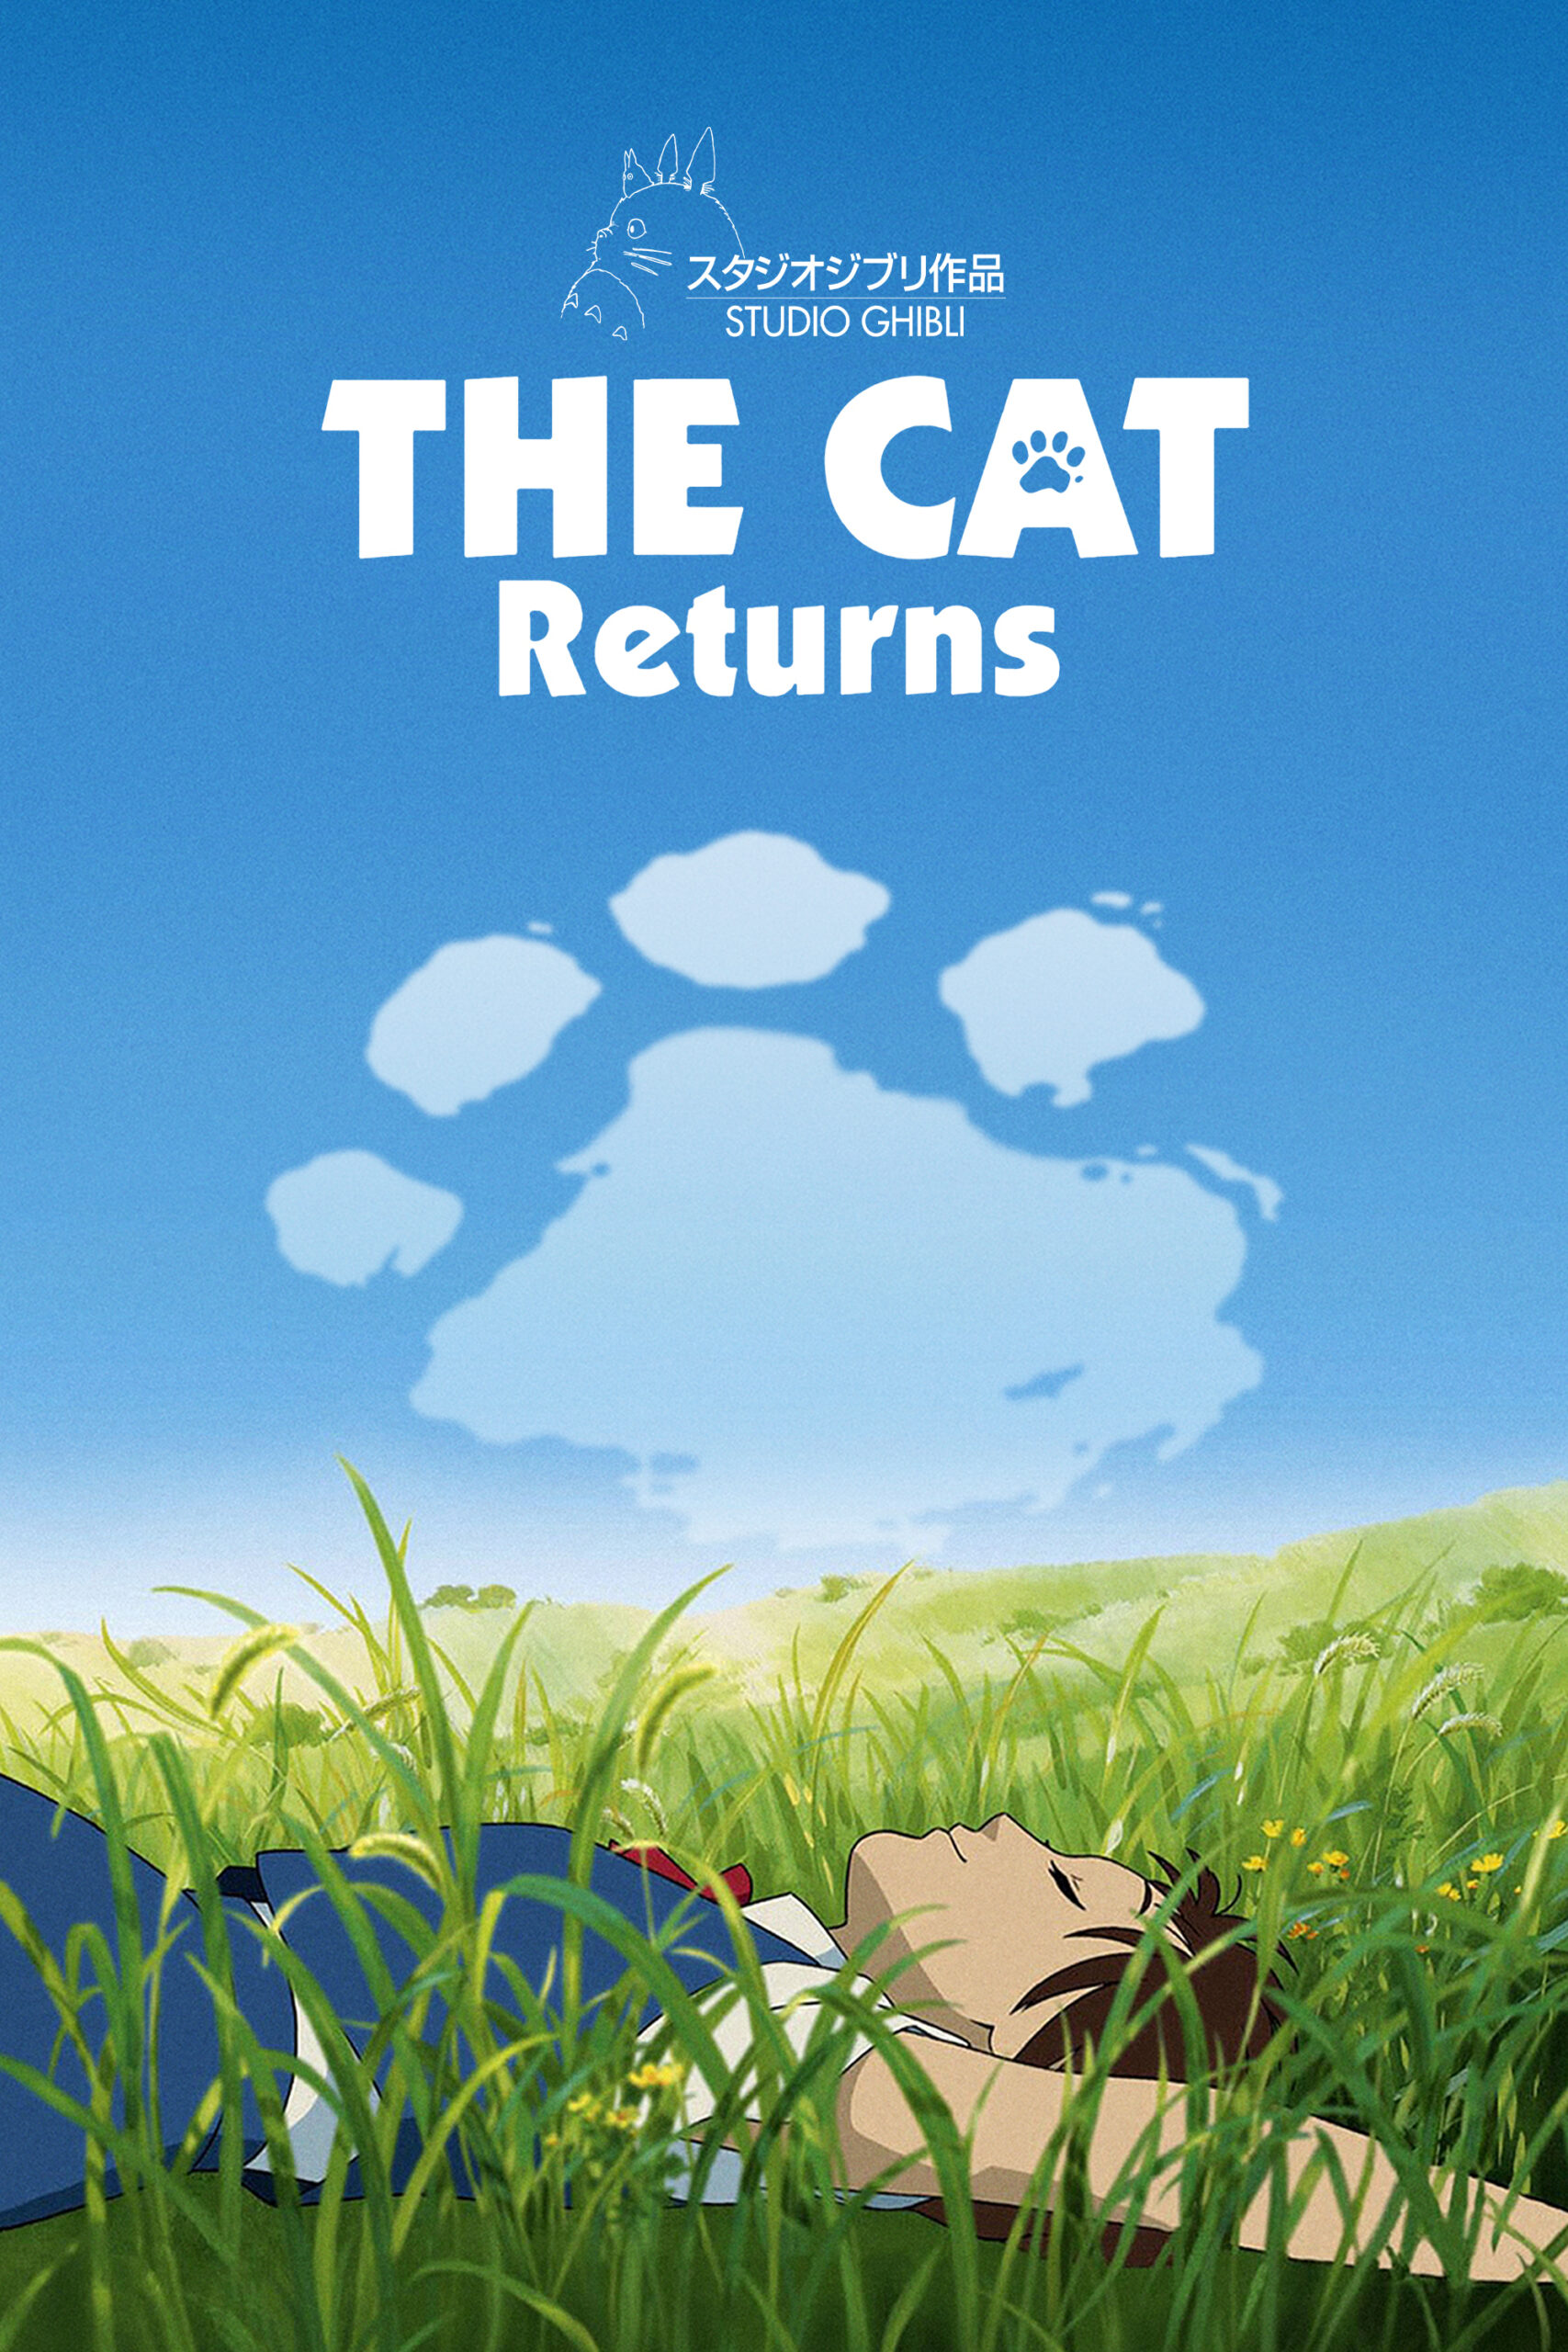 ดูหนังออนไลน์ฟรี The Cat Returns (2002) เจ้าแมวยอดนักสืบ พากย์ไทย